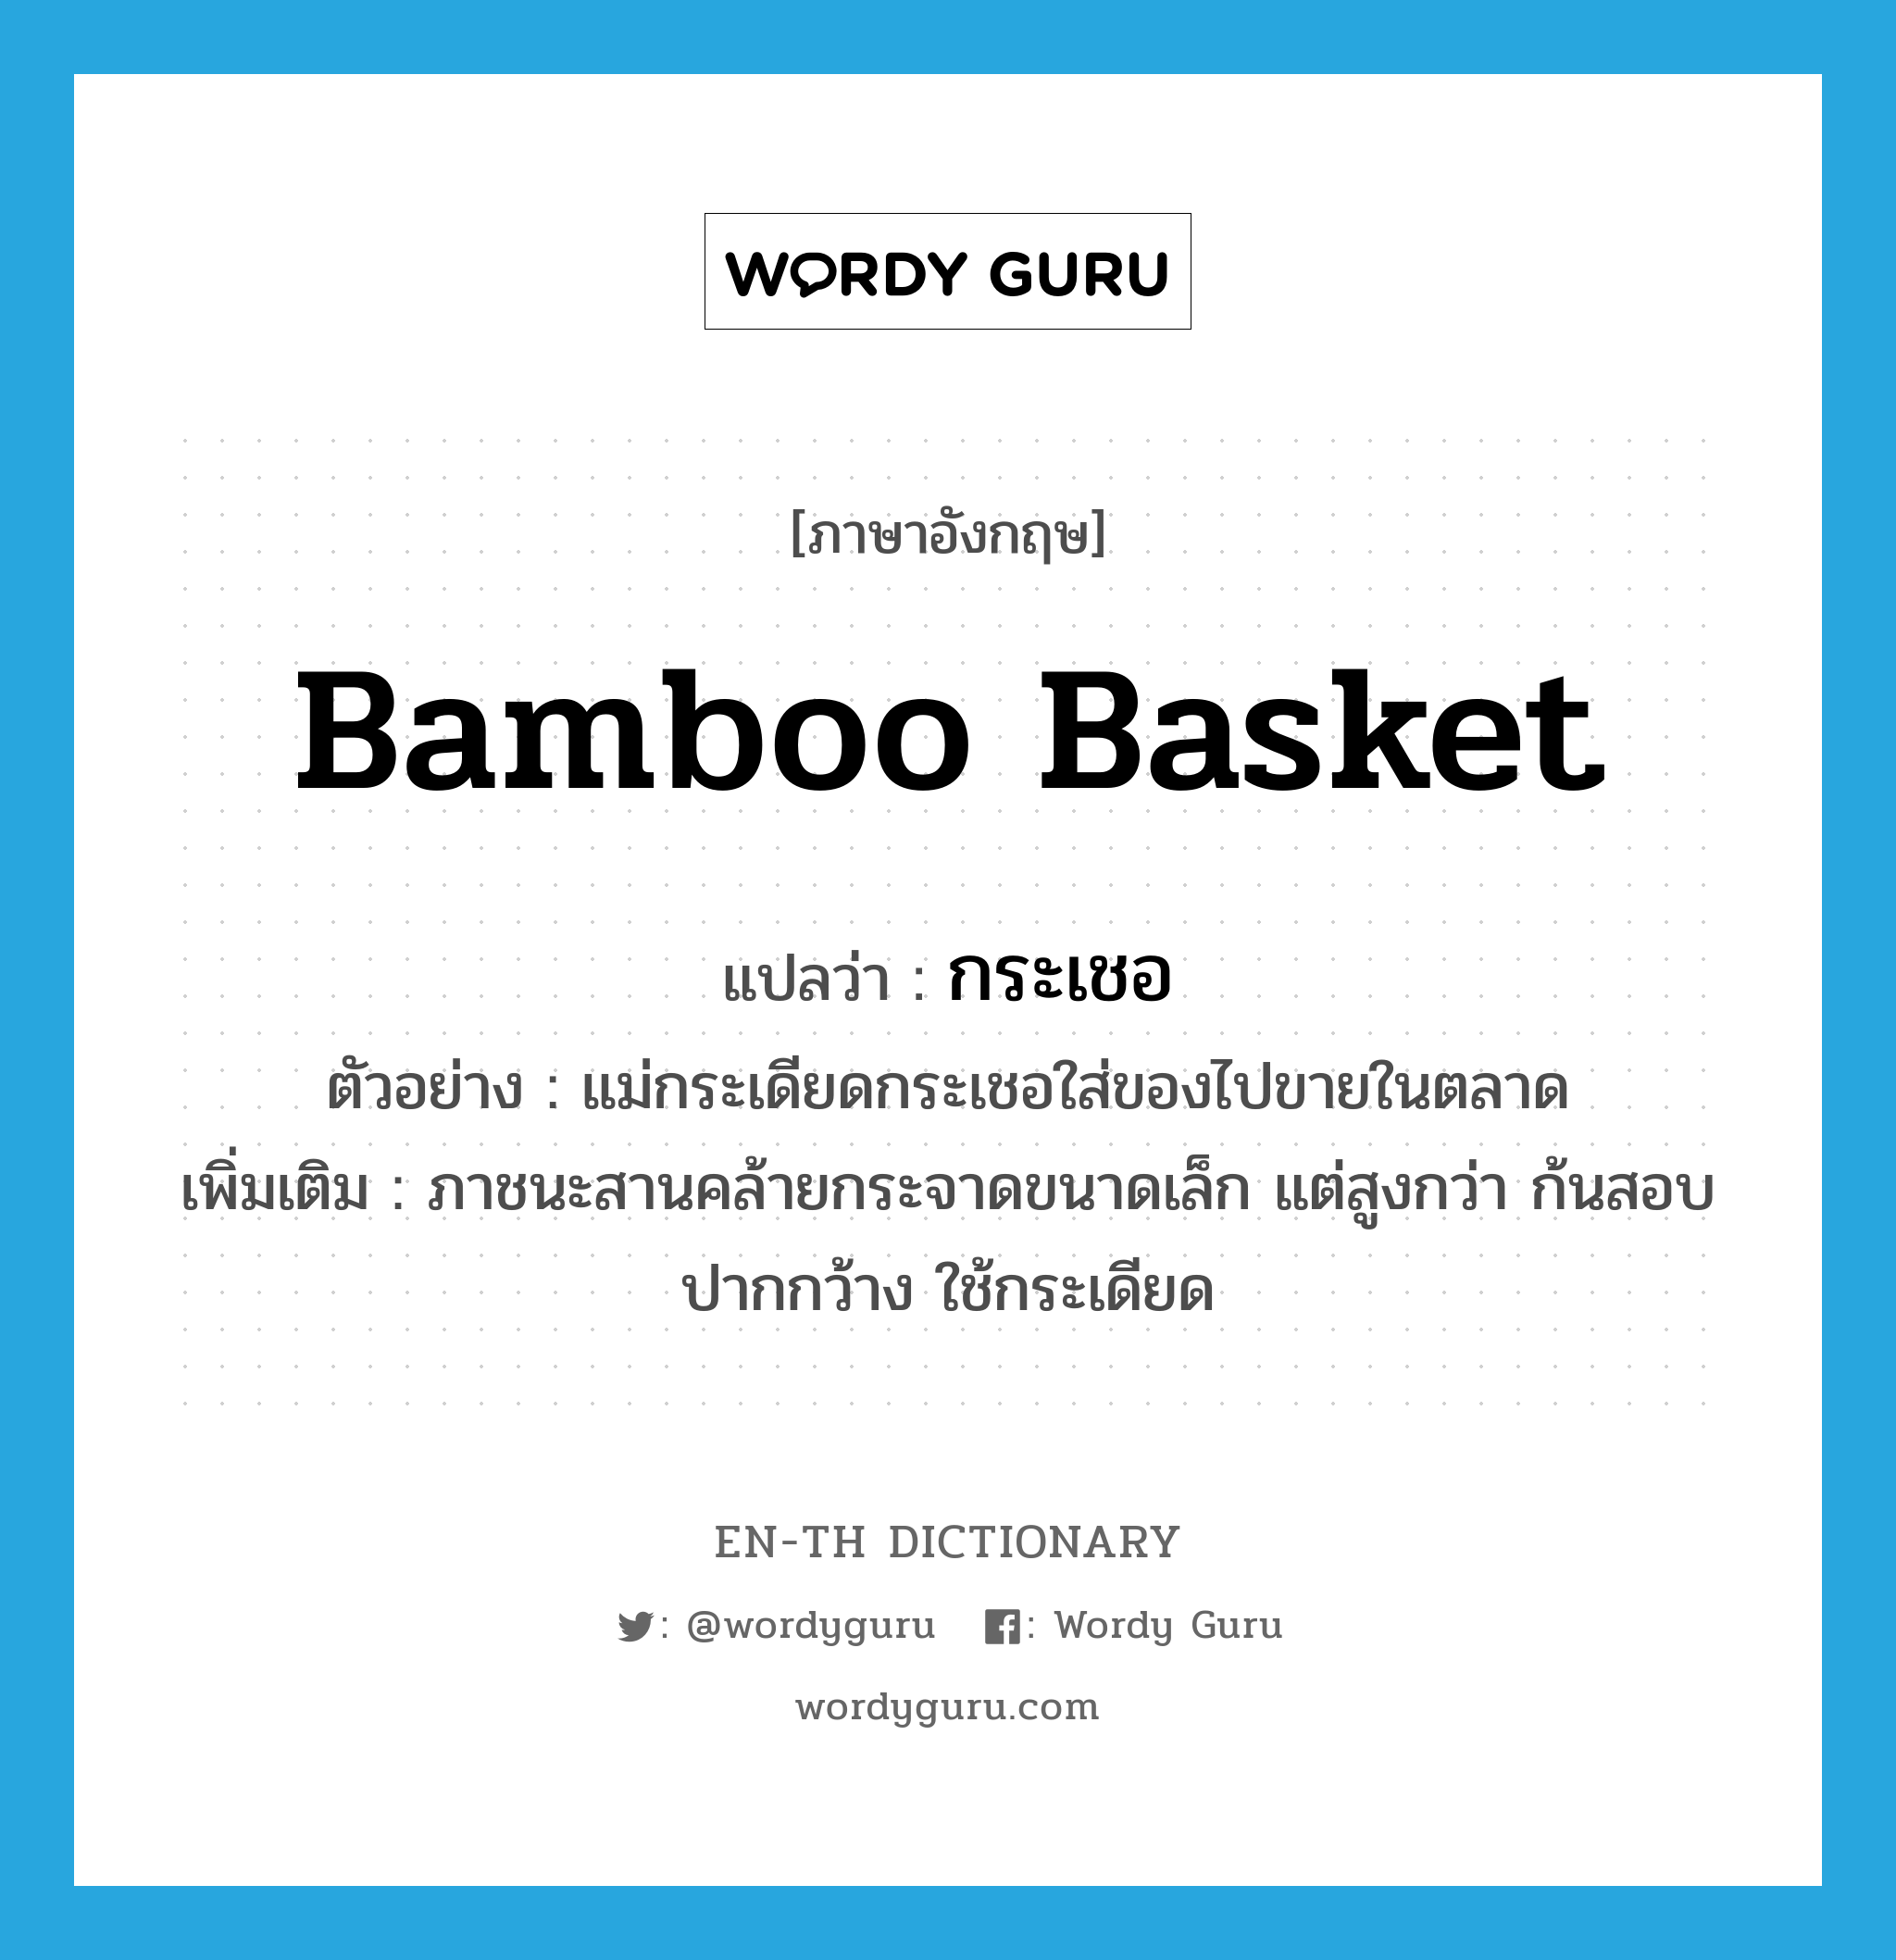 bamboo basket แปลว่า?, คำศัพท์ภาษาอังกฤษ bamboo basket แปลว่า กระเชอ ประเภท N ตัวอย่าง แม่กระเดียดกระเชอใส่ของไปขายในตลาด เพิ่มเติม ภาชนะสานคล้ายกระจาดขนาดเล็ก แต่สูงกว่า ก้นสอบ ปากกว้าง ใช้กระเดียด หมวด N